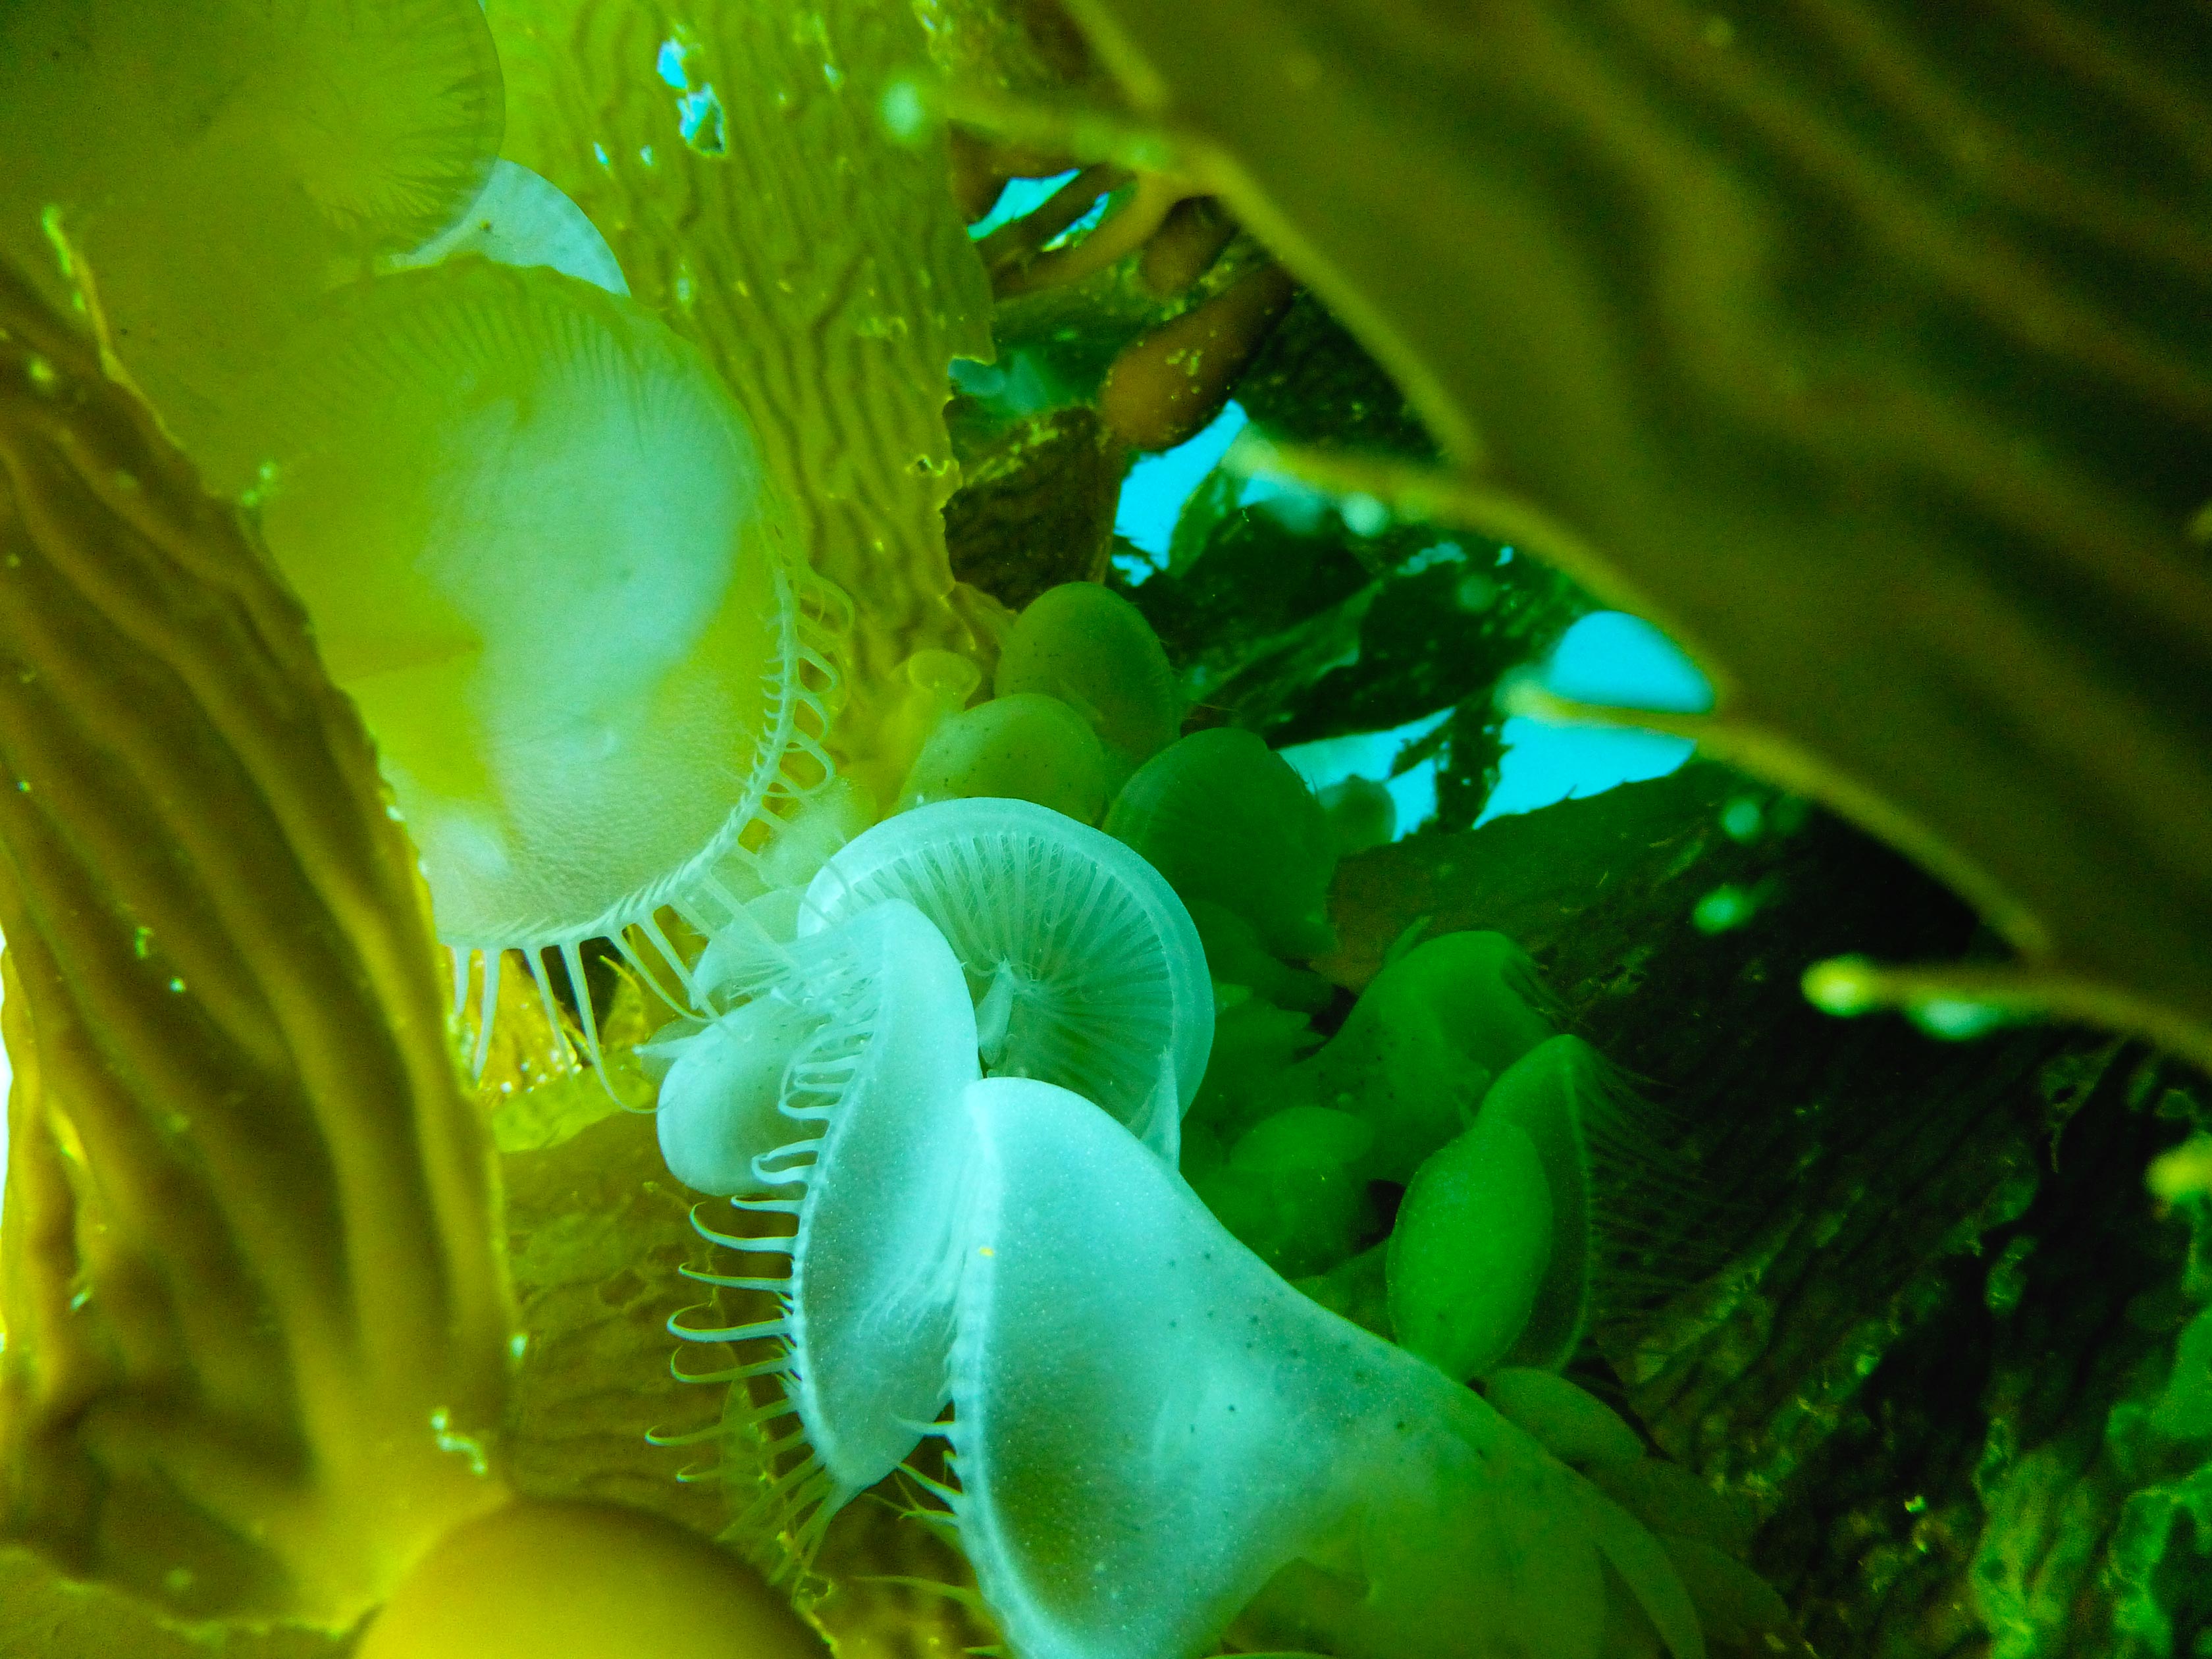 hooded nudibranch on kelp